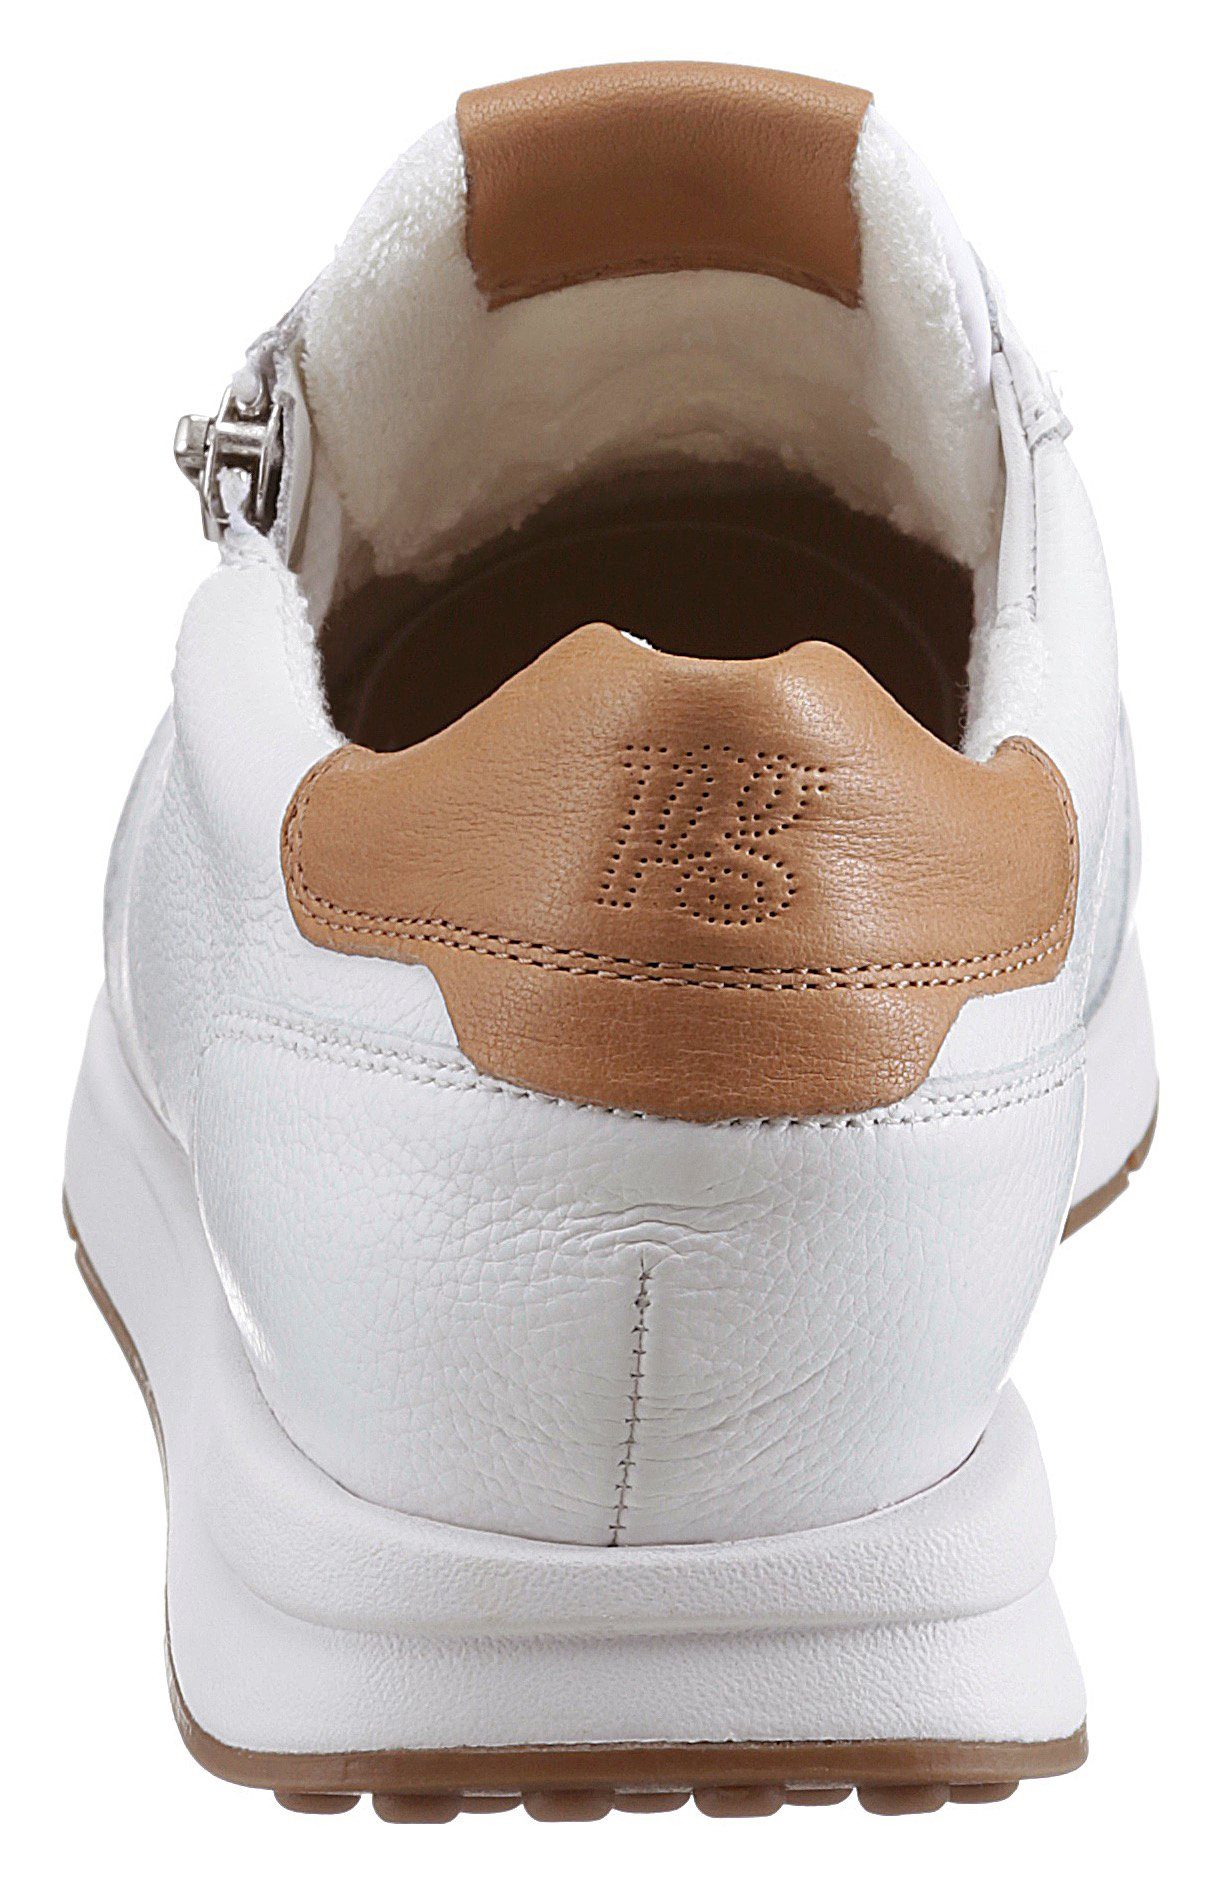 Paul Green Sneaker mit weiß-curryfarben dezenten Kontrast-Details